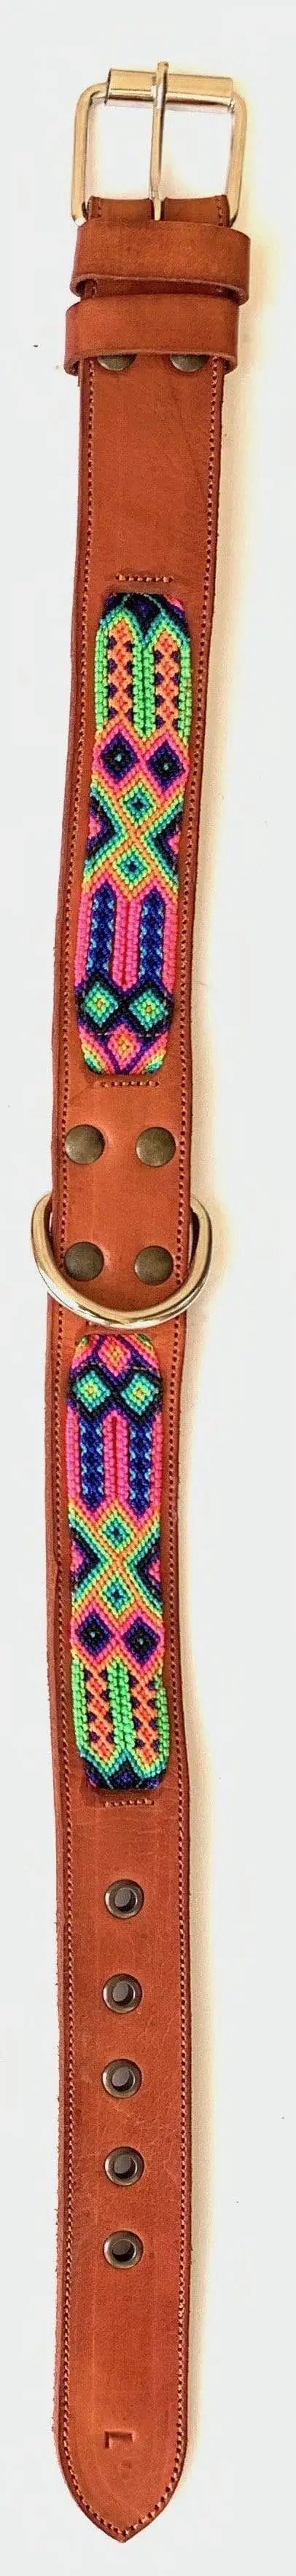 Double Detail Artisanal Handmade Dog Collars - 34